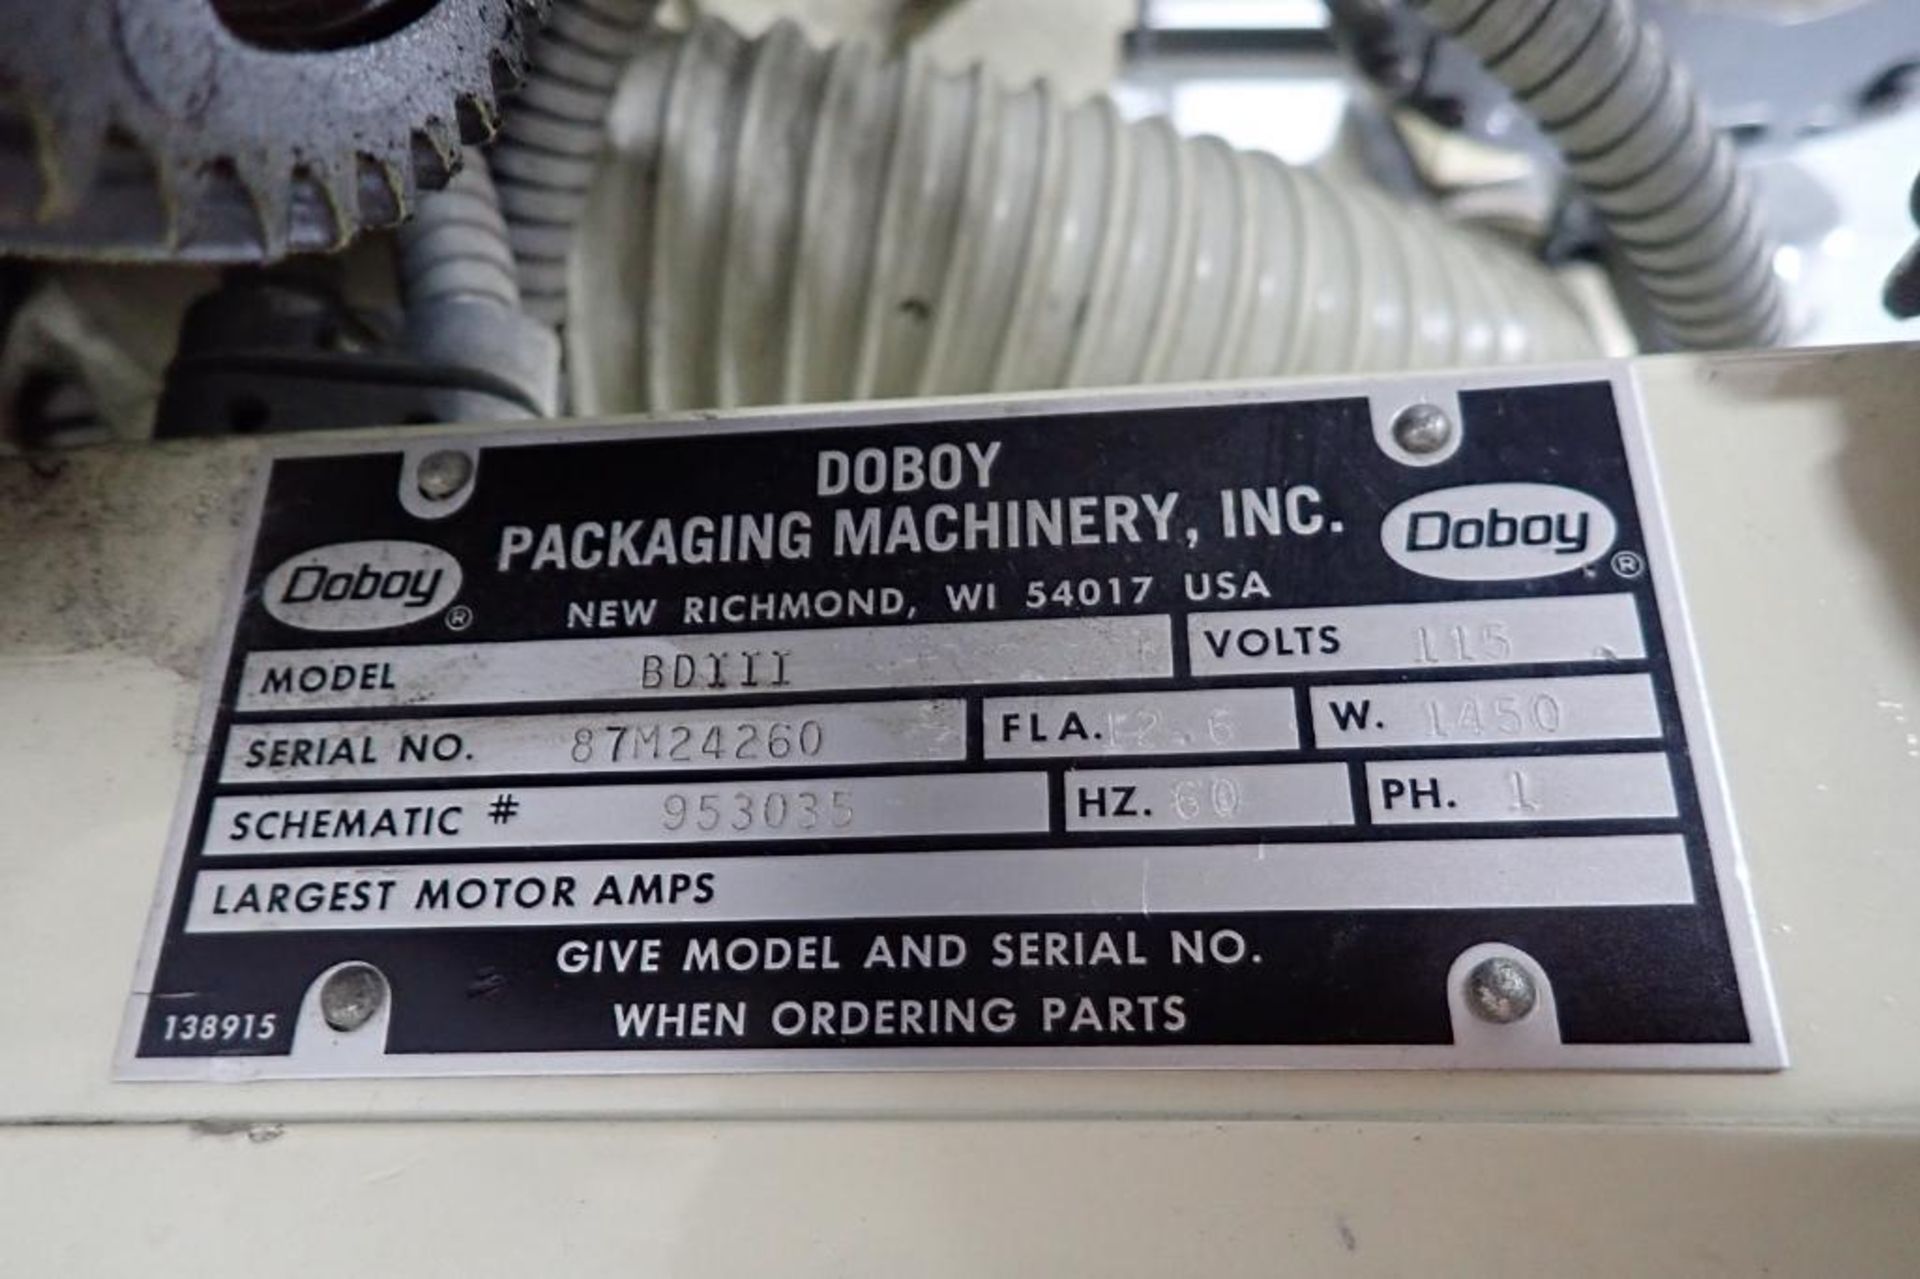 Doboy bag sealer, Model BDIII, SN 87M24260, 115 volt - ** Rigging Fee: $ 75 ** - Image 10 of 10